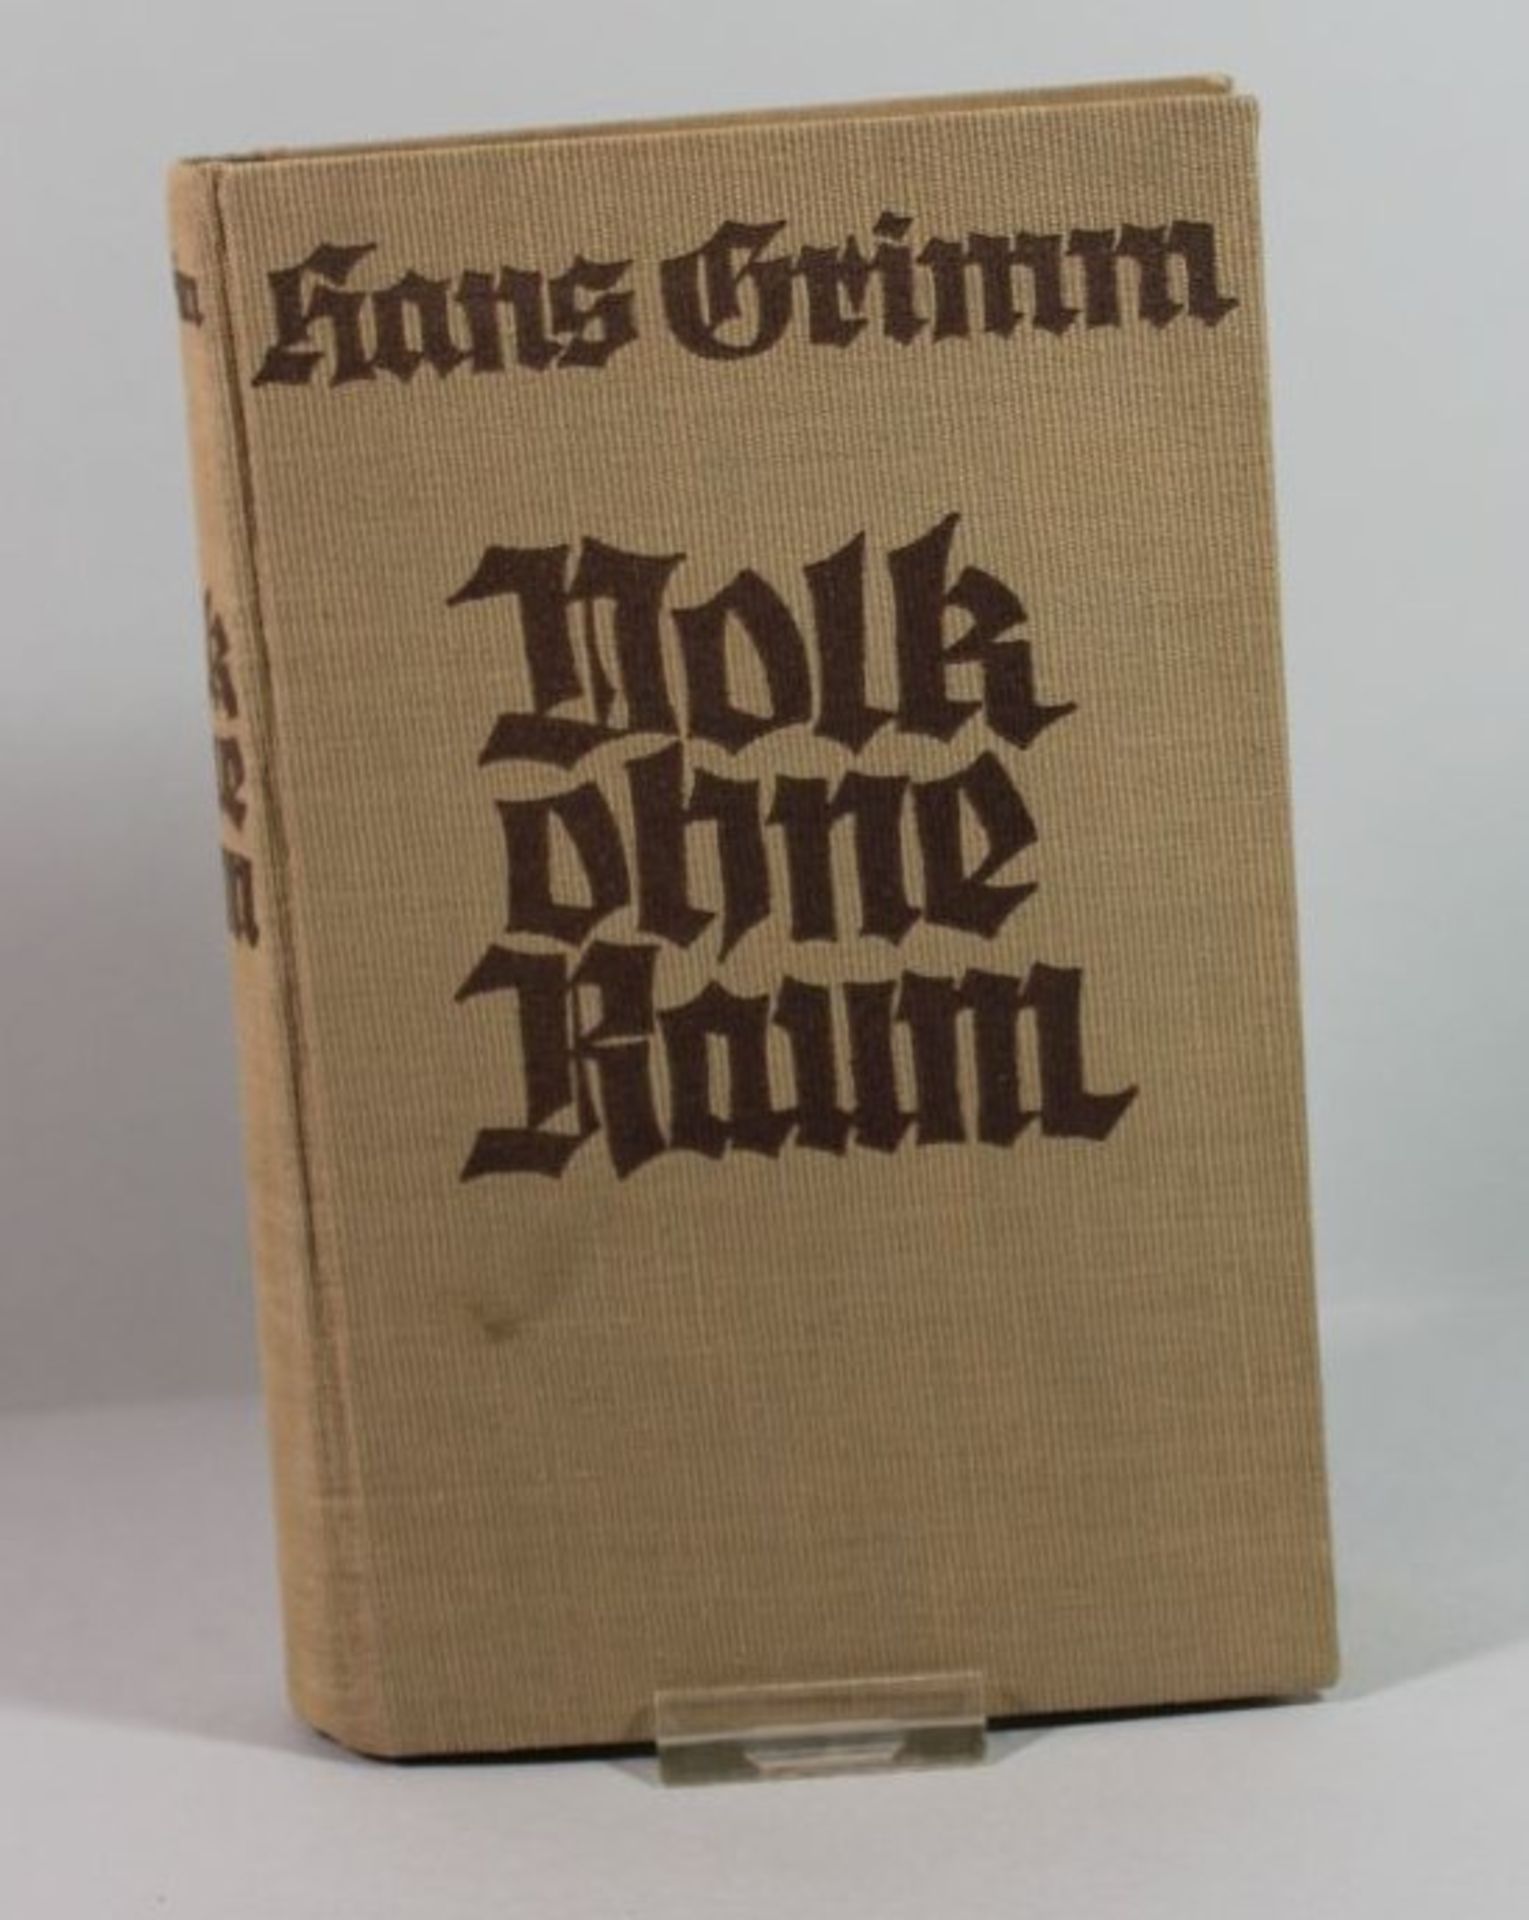 Volk ohne Raum, Hans Grimm, 1926.